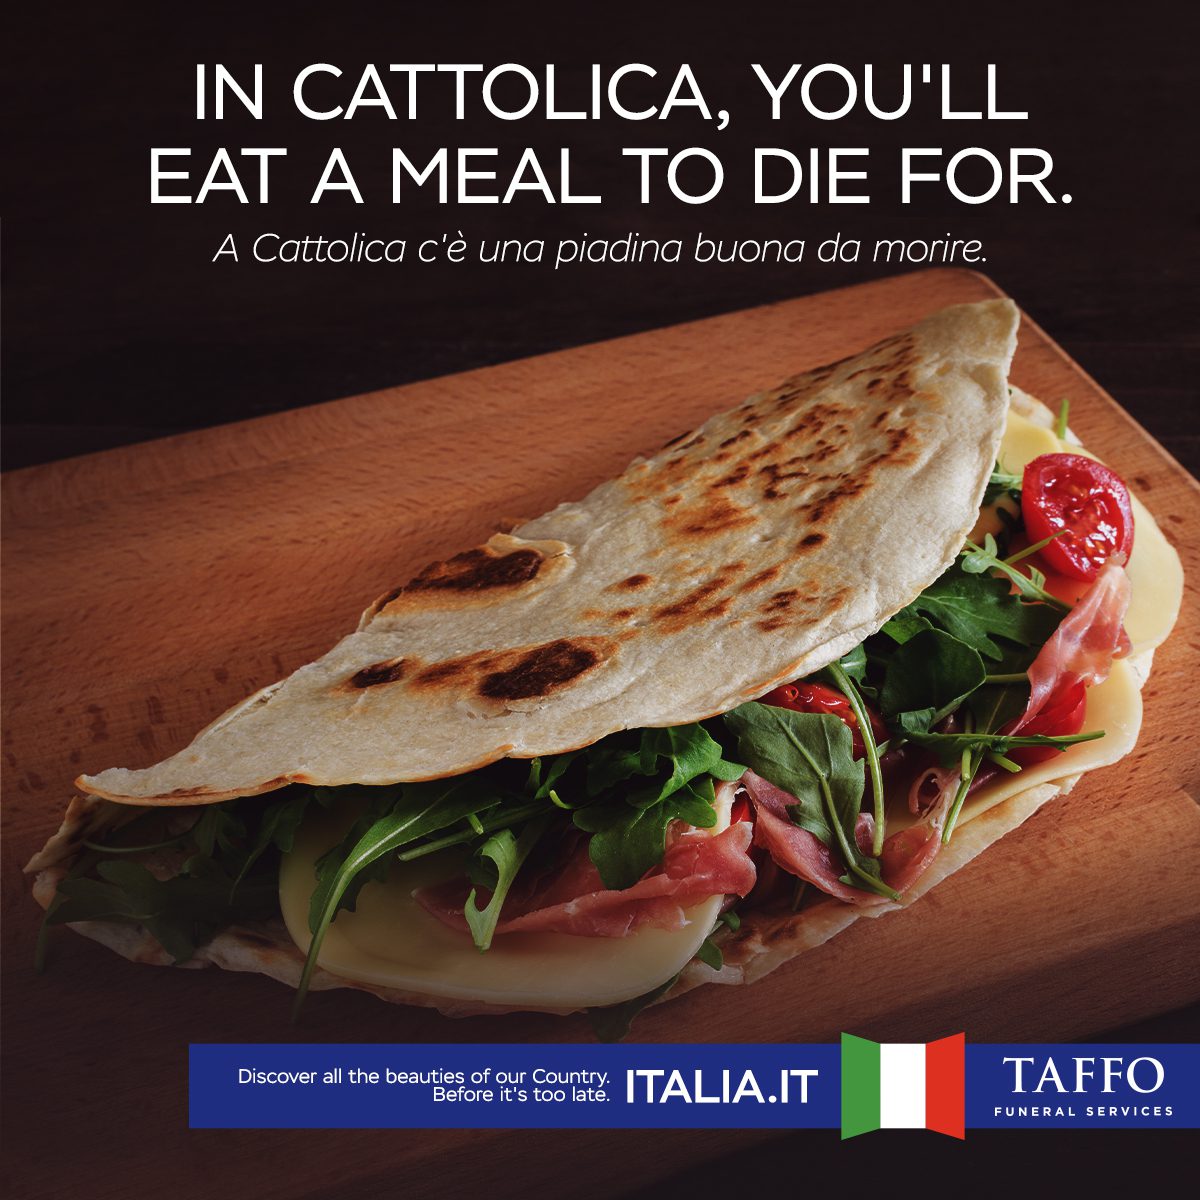 taffo campagna promozione italia